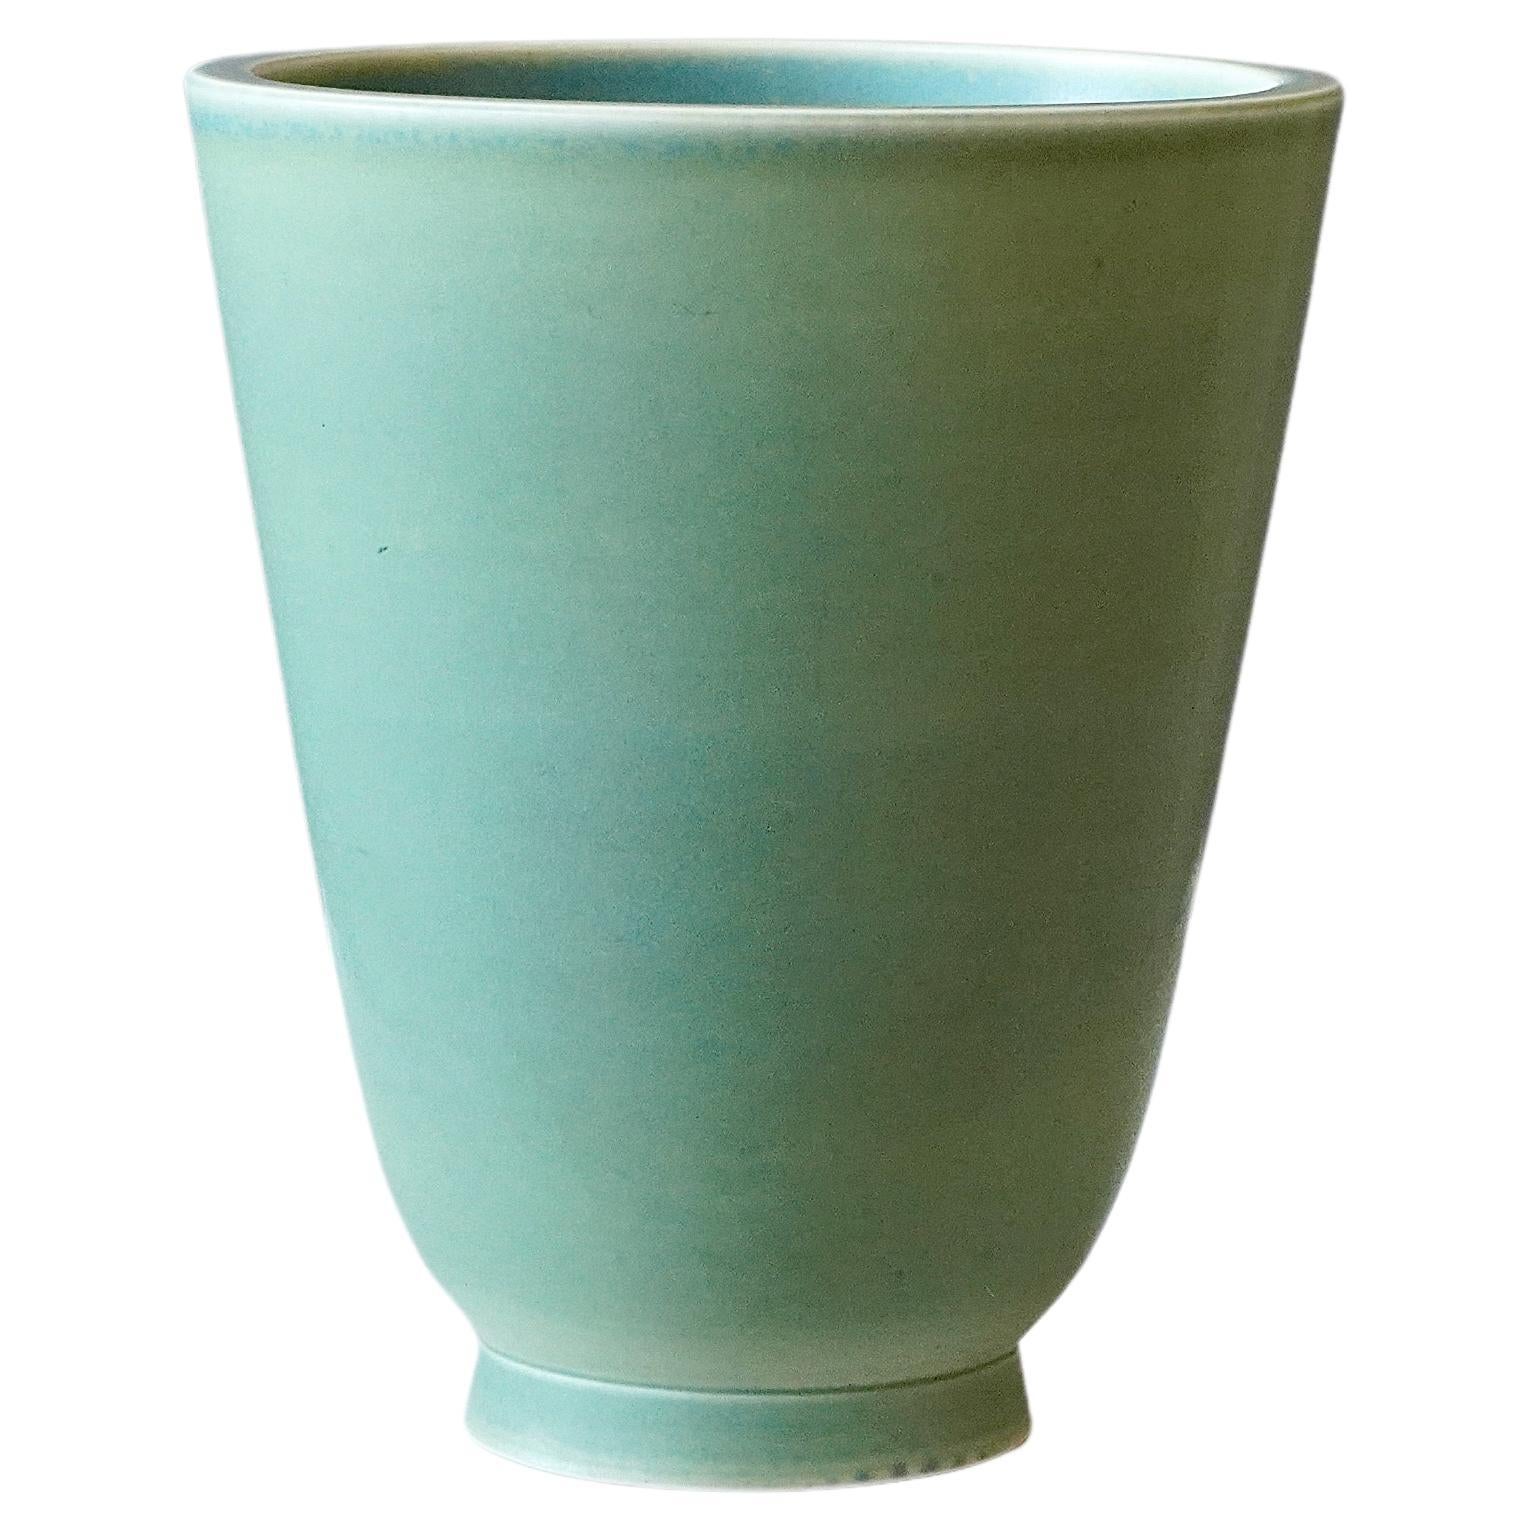 Vase 'Celadon' by Wilhelm Kåge for Gustavsberg Studio, Sweden, 1940s